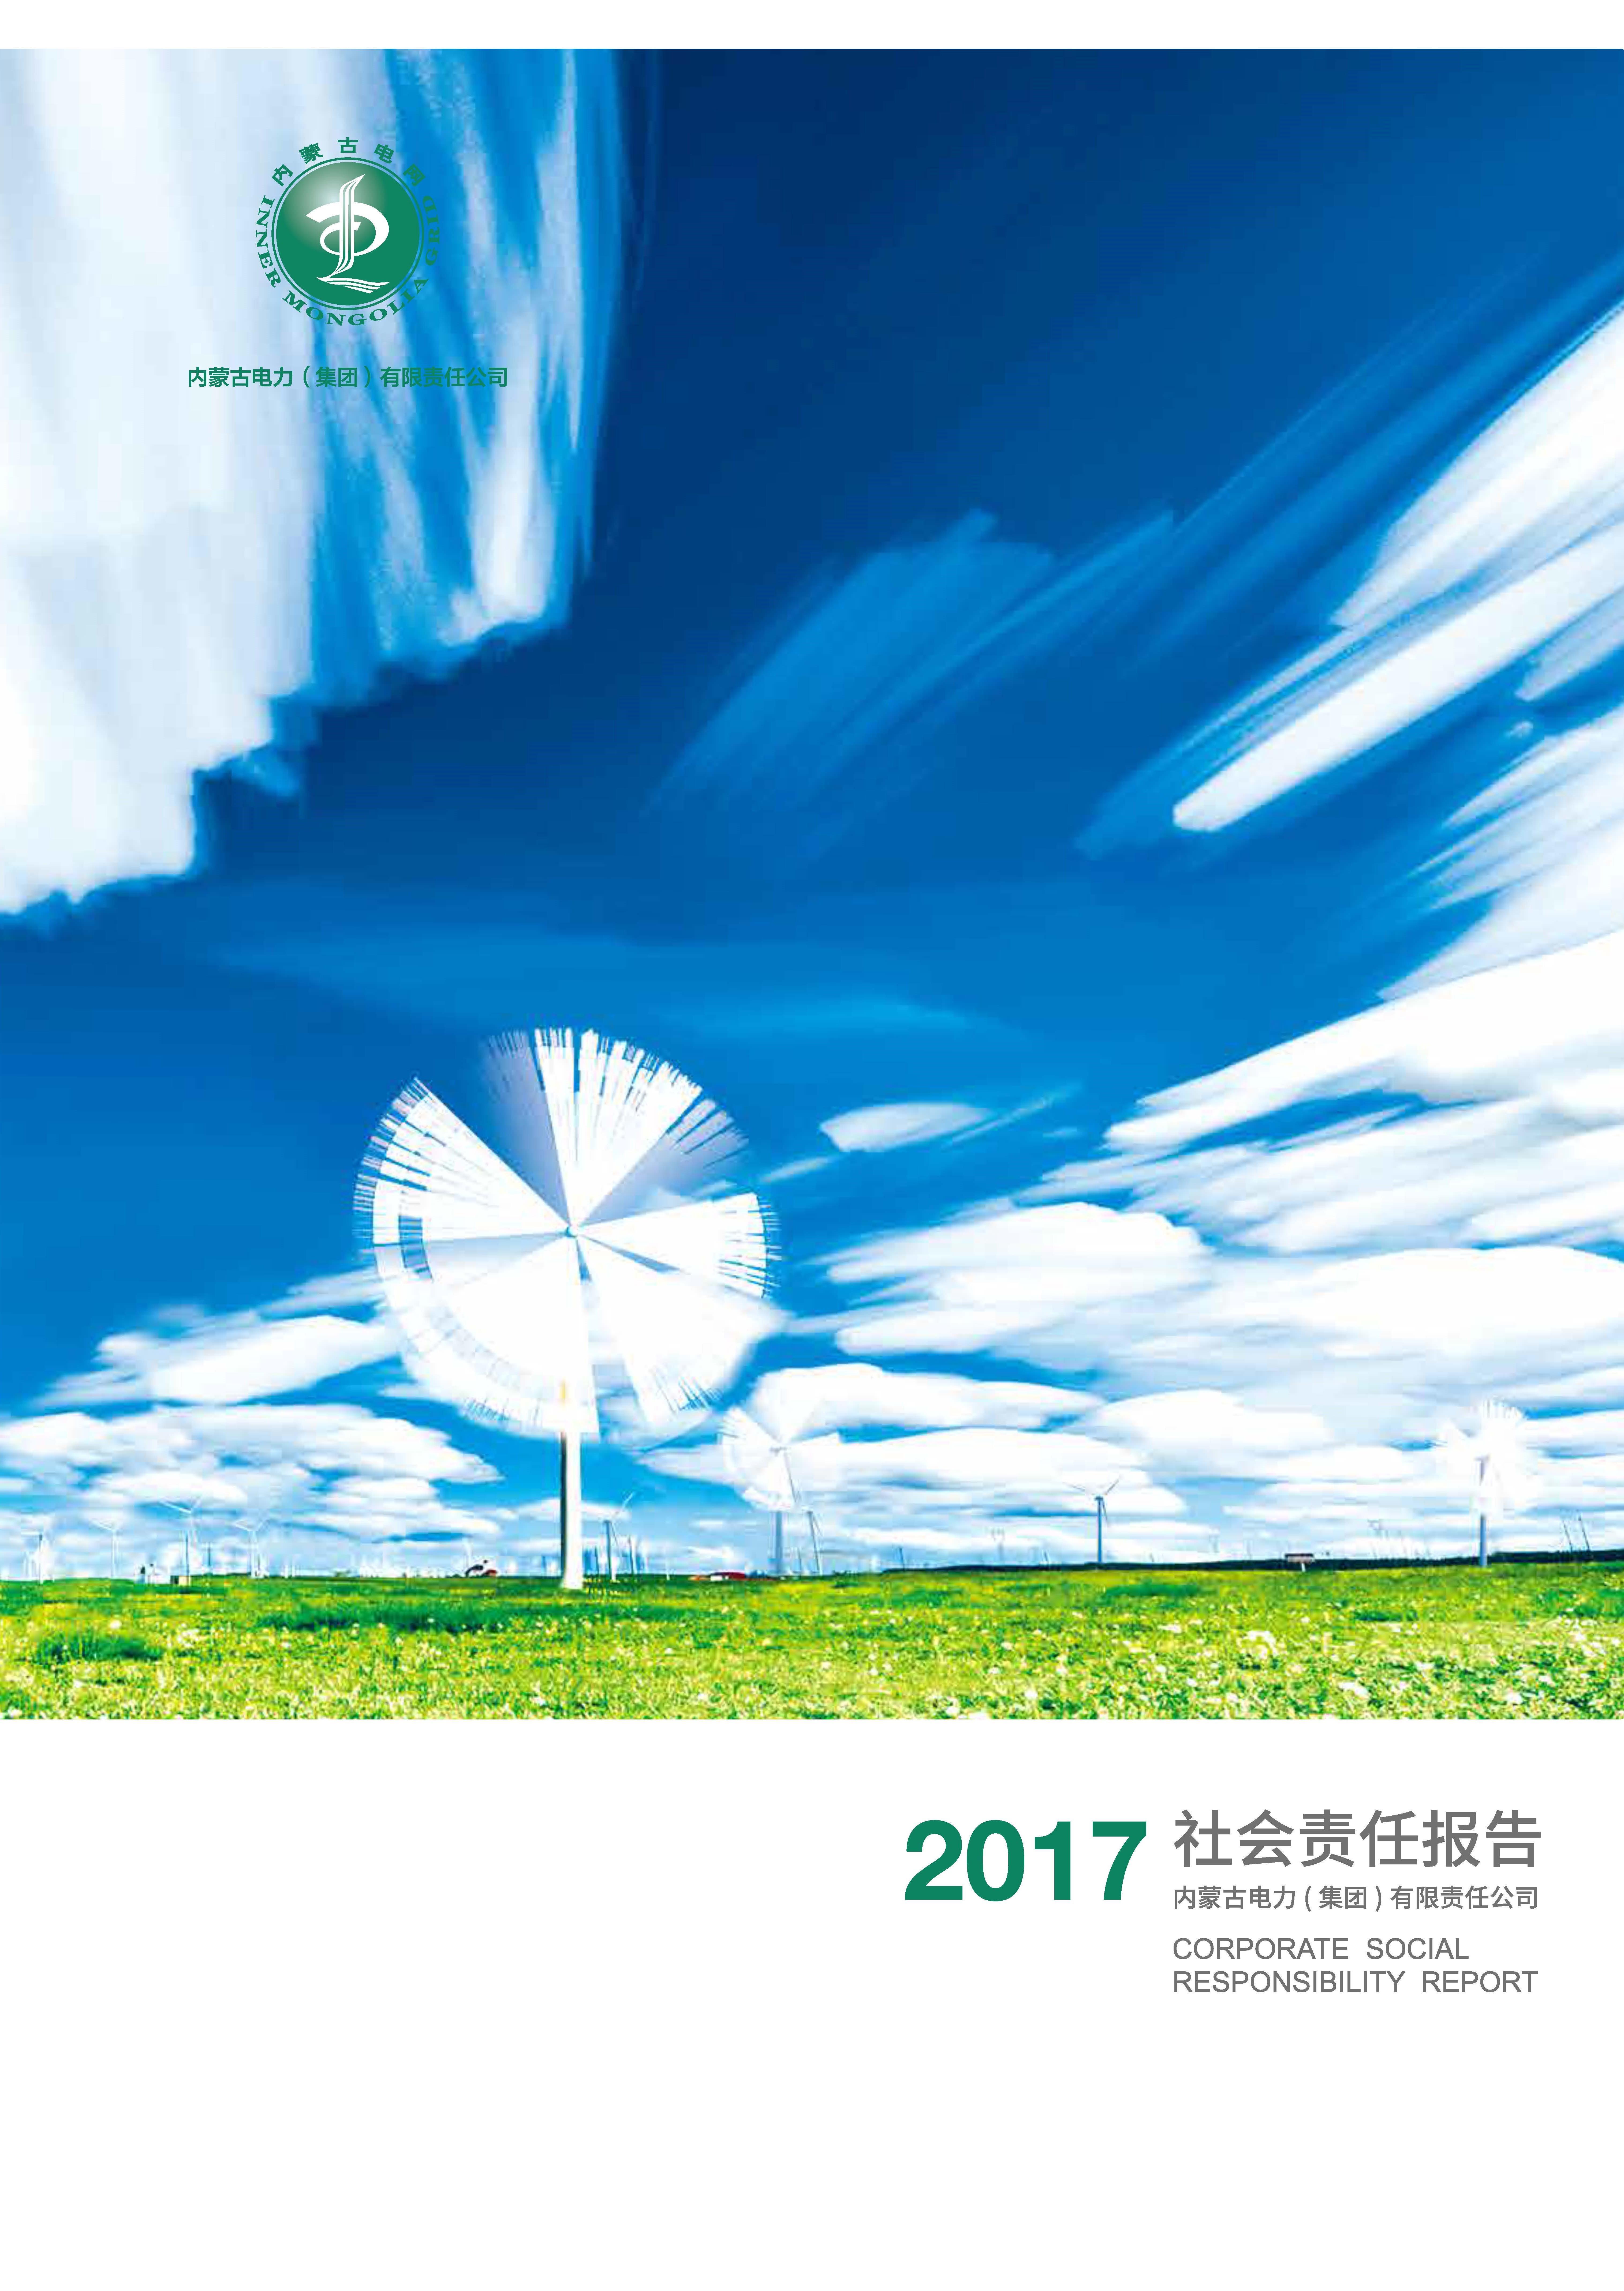 内蒙古电力集团2017年社会责任报告